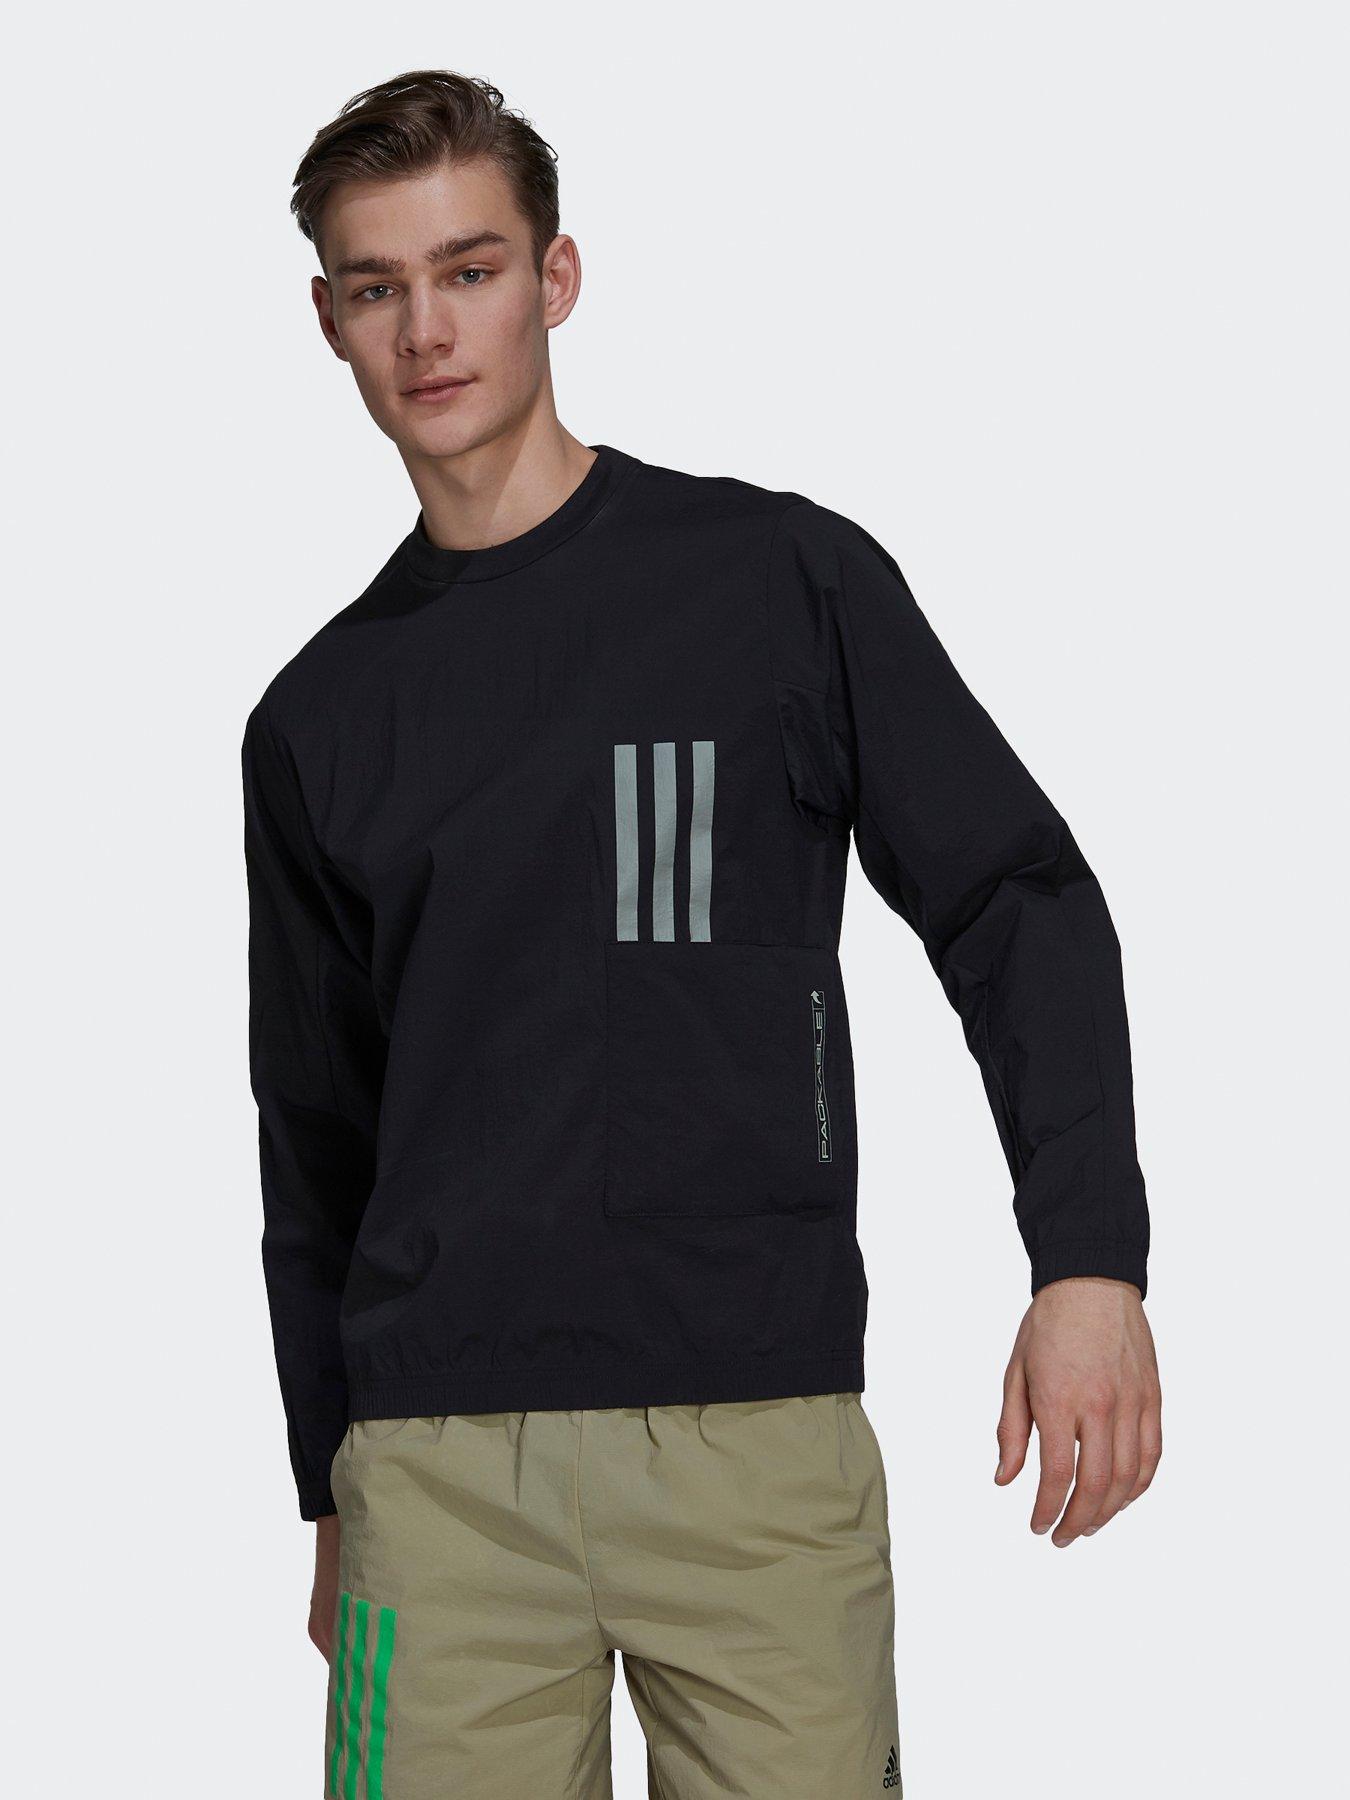  Sportswear X-city Packable Sweatshirt